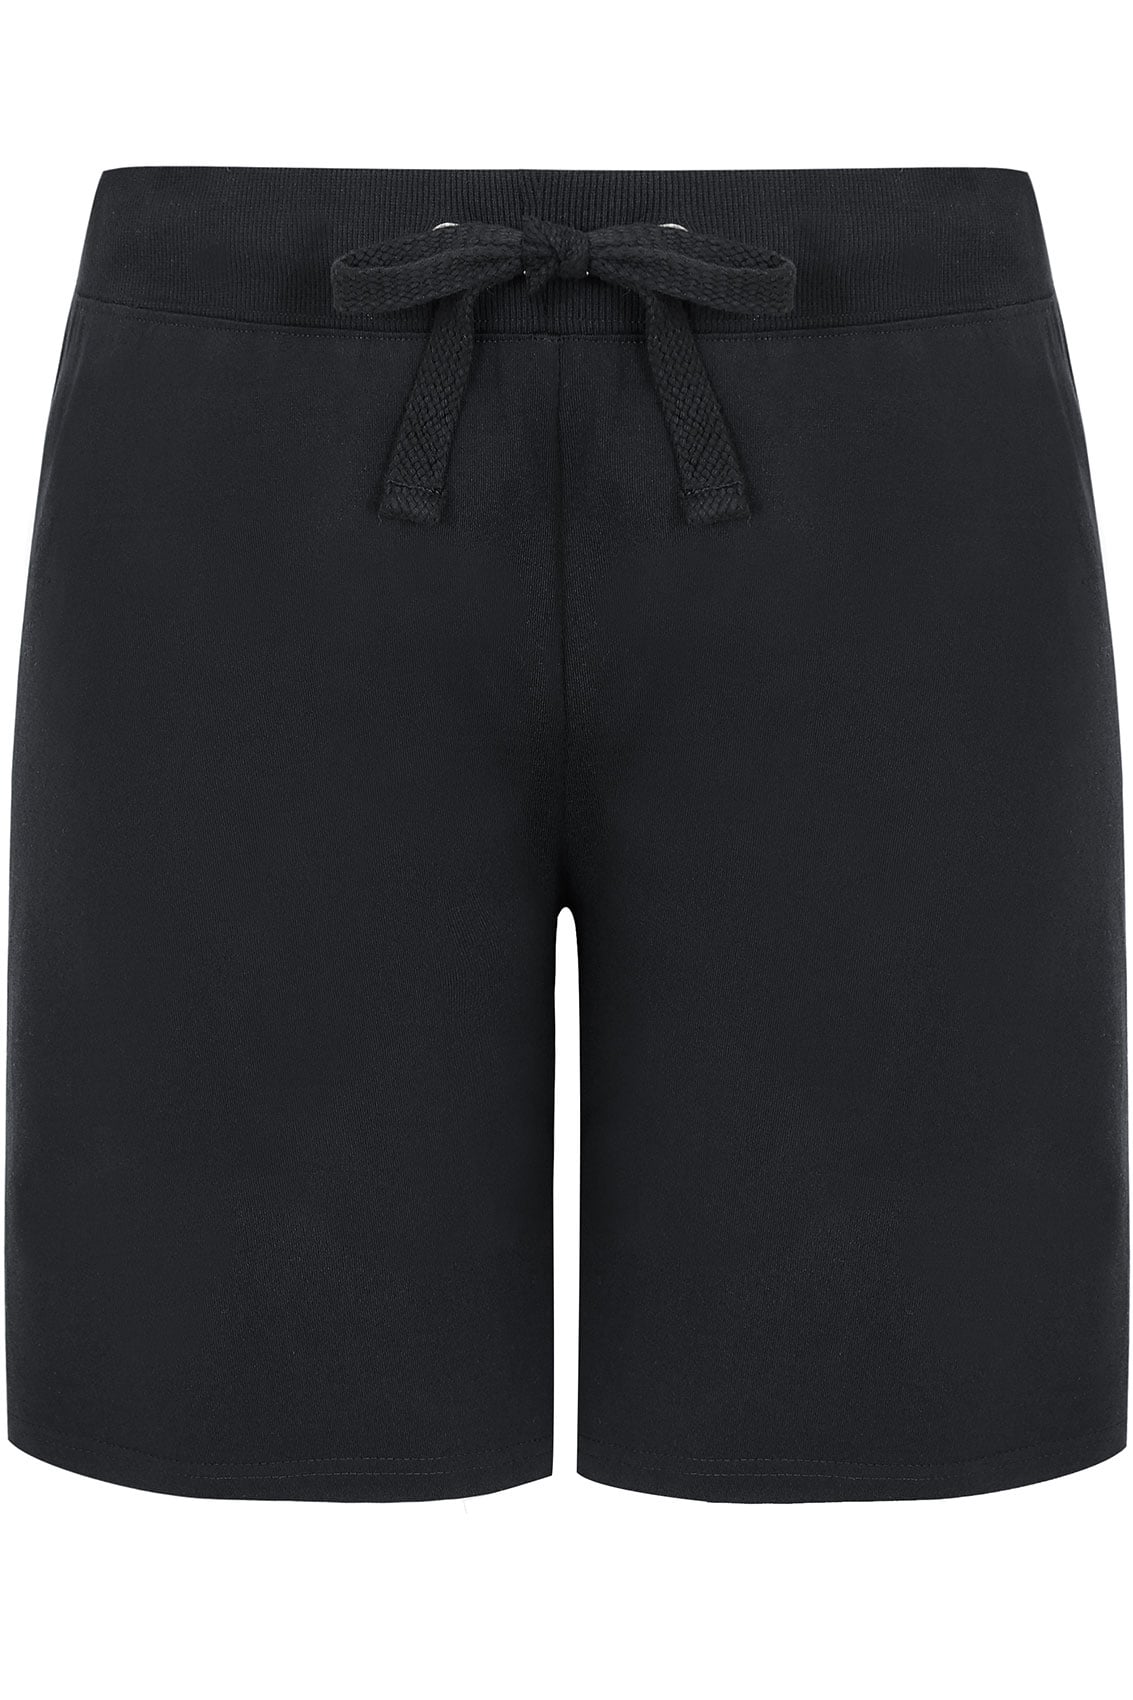 Black Jogger Shorts, Plus size 16 to 36